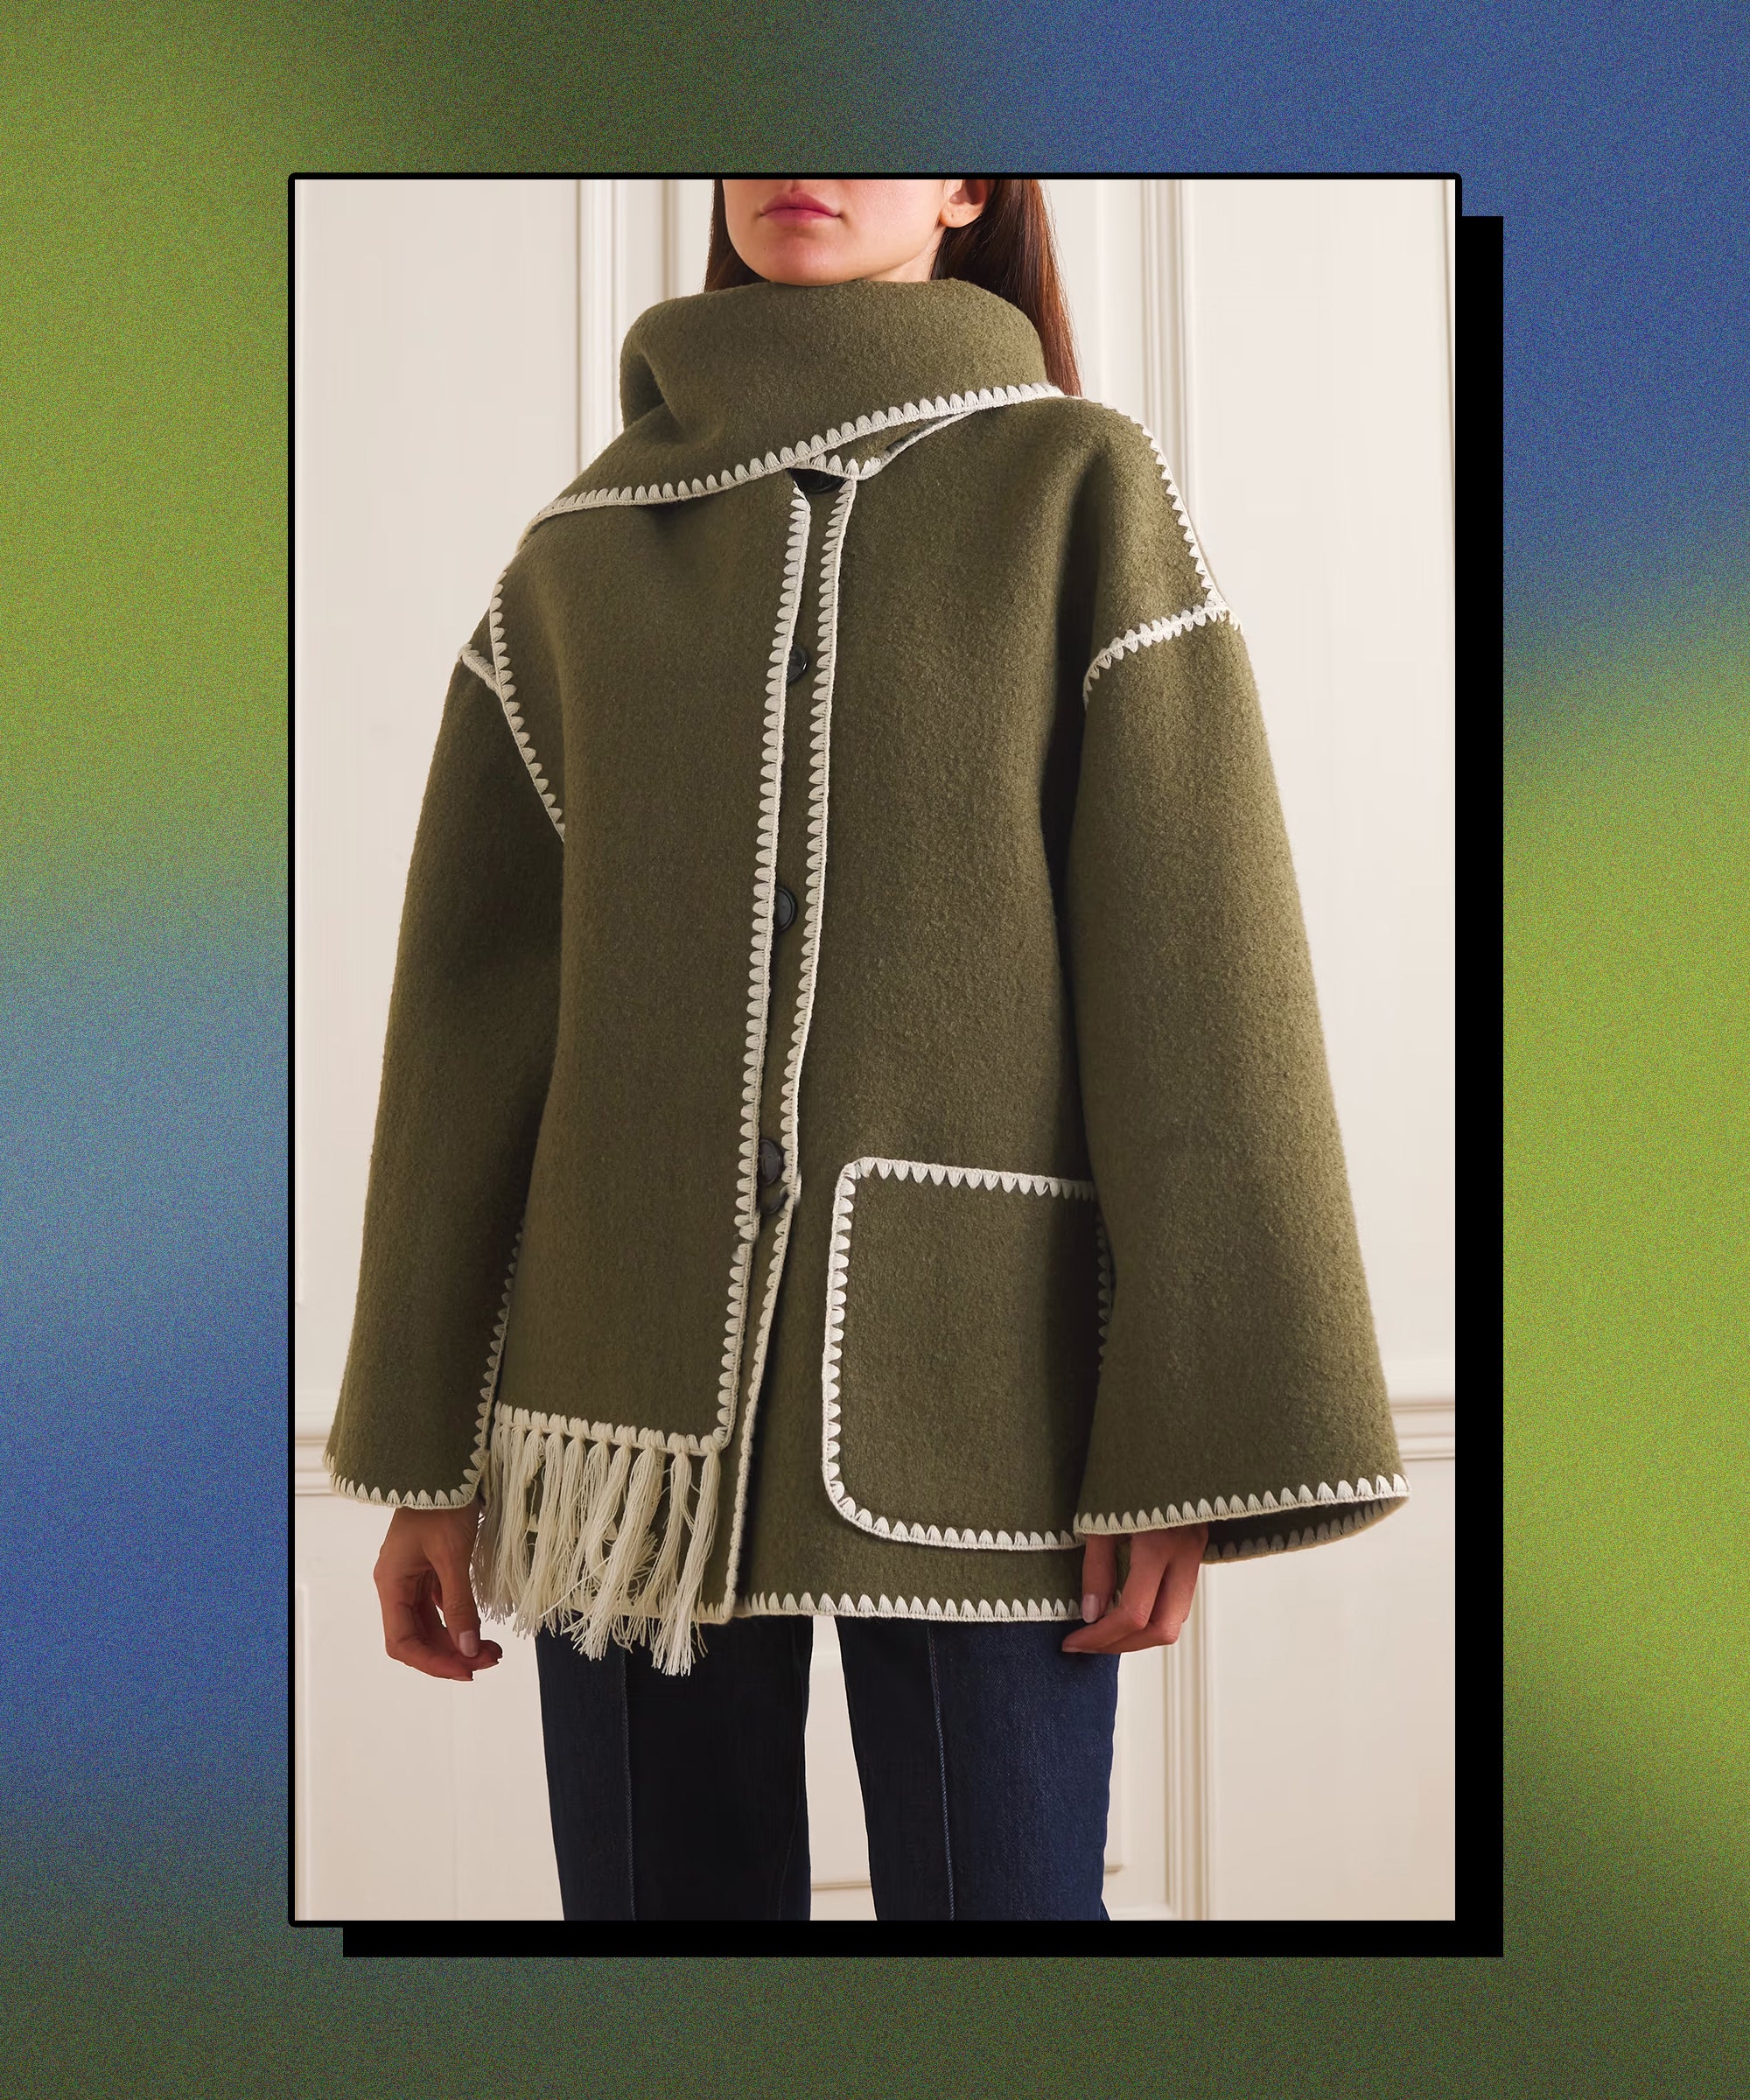 Winter Look: Blanket Scarf & Long Wool Coat